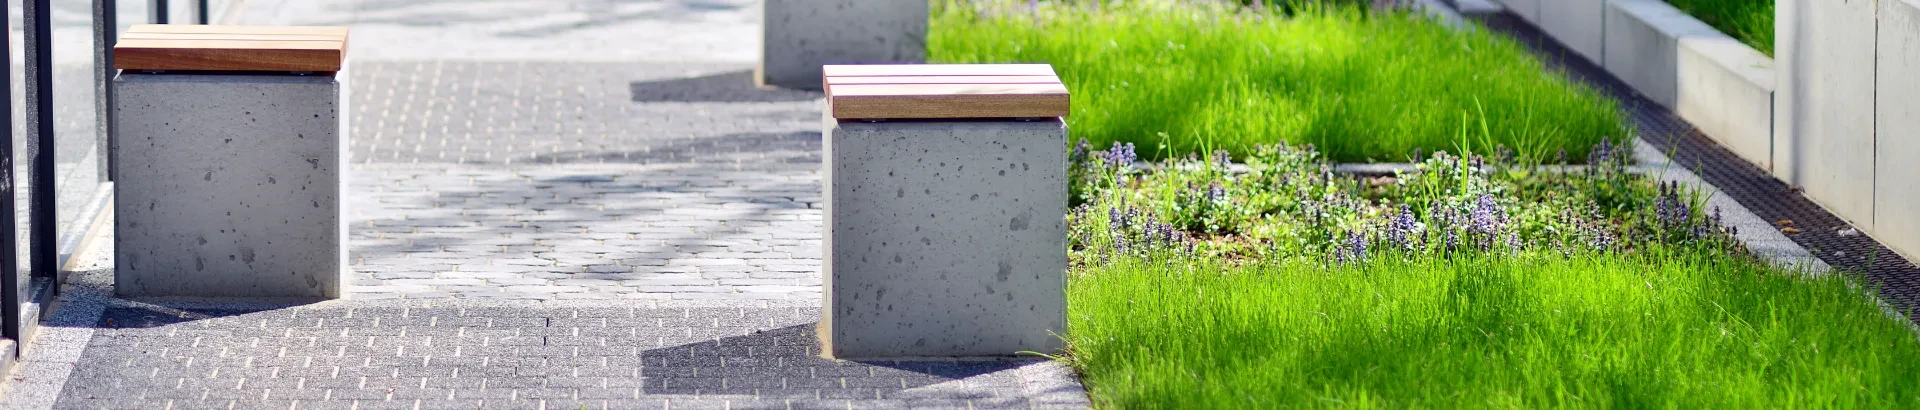 siedziska betonowe